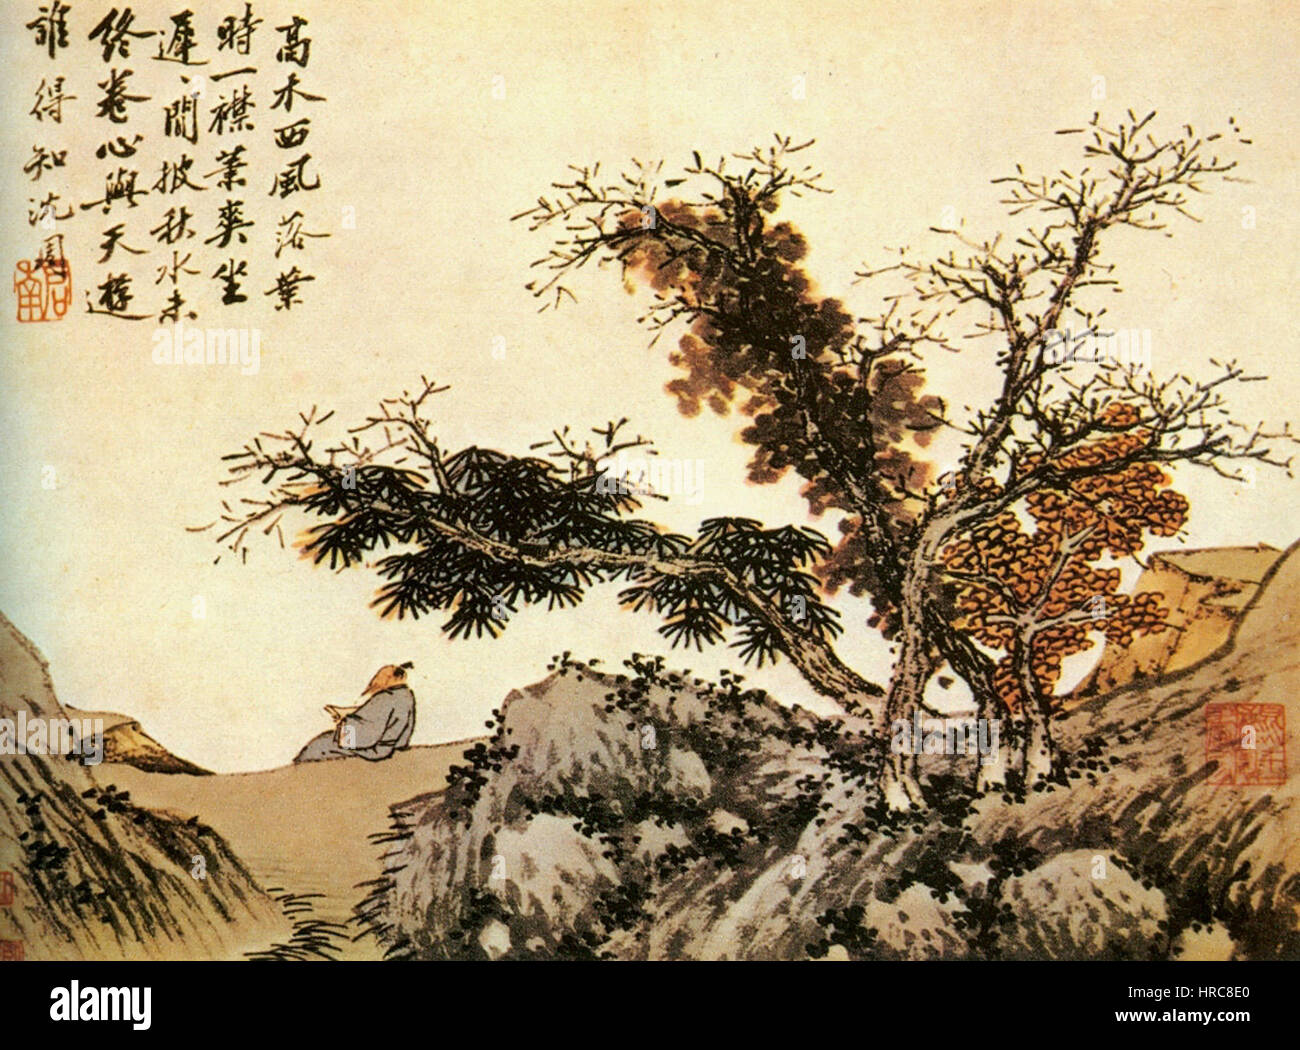 Китайская поэзия эпохи Тан